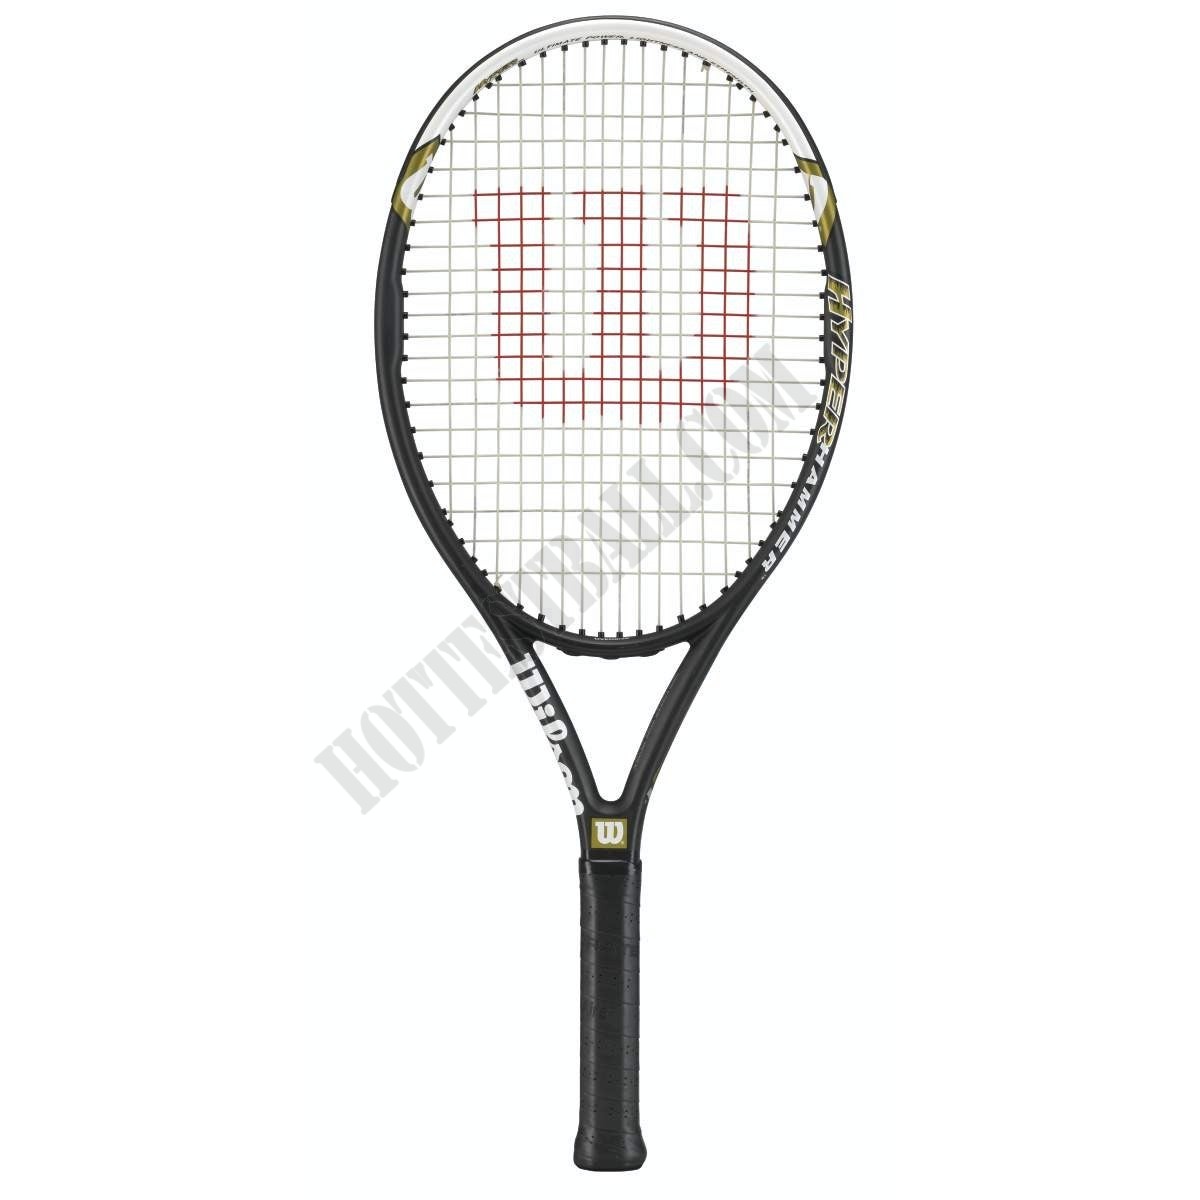 Hyper Hammer 5.3 Tennis Racket - Wilson Discount Store - Hyper Hammer 5.3 Tennis Racket - Wilson Discount Store